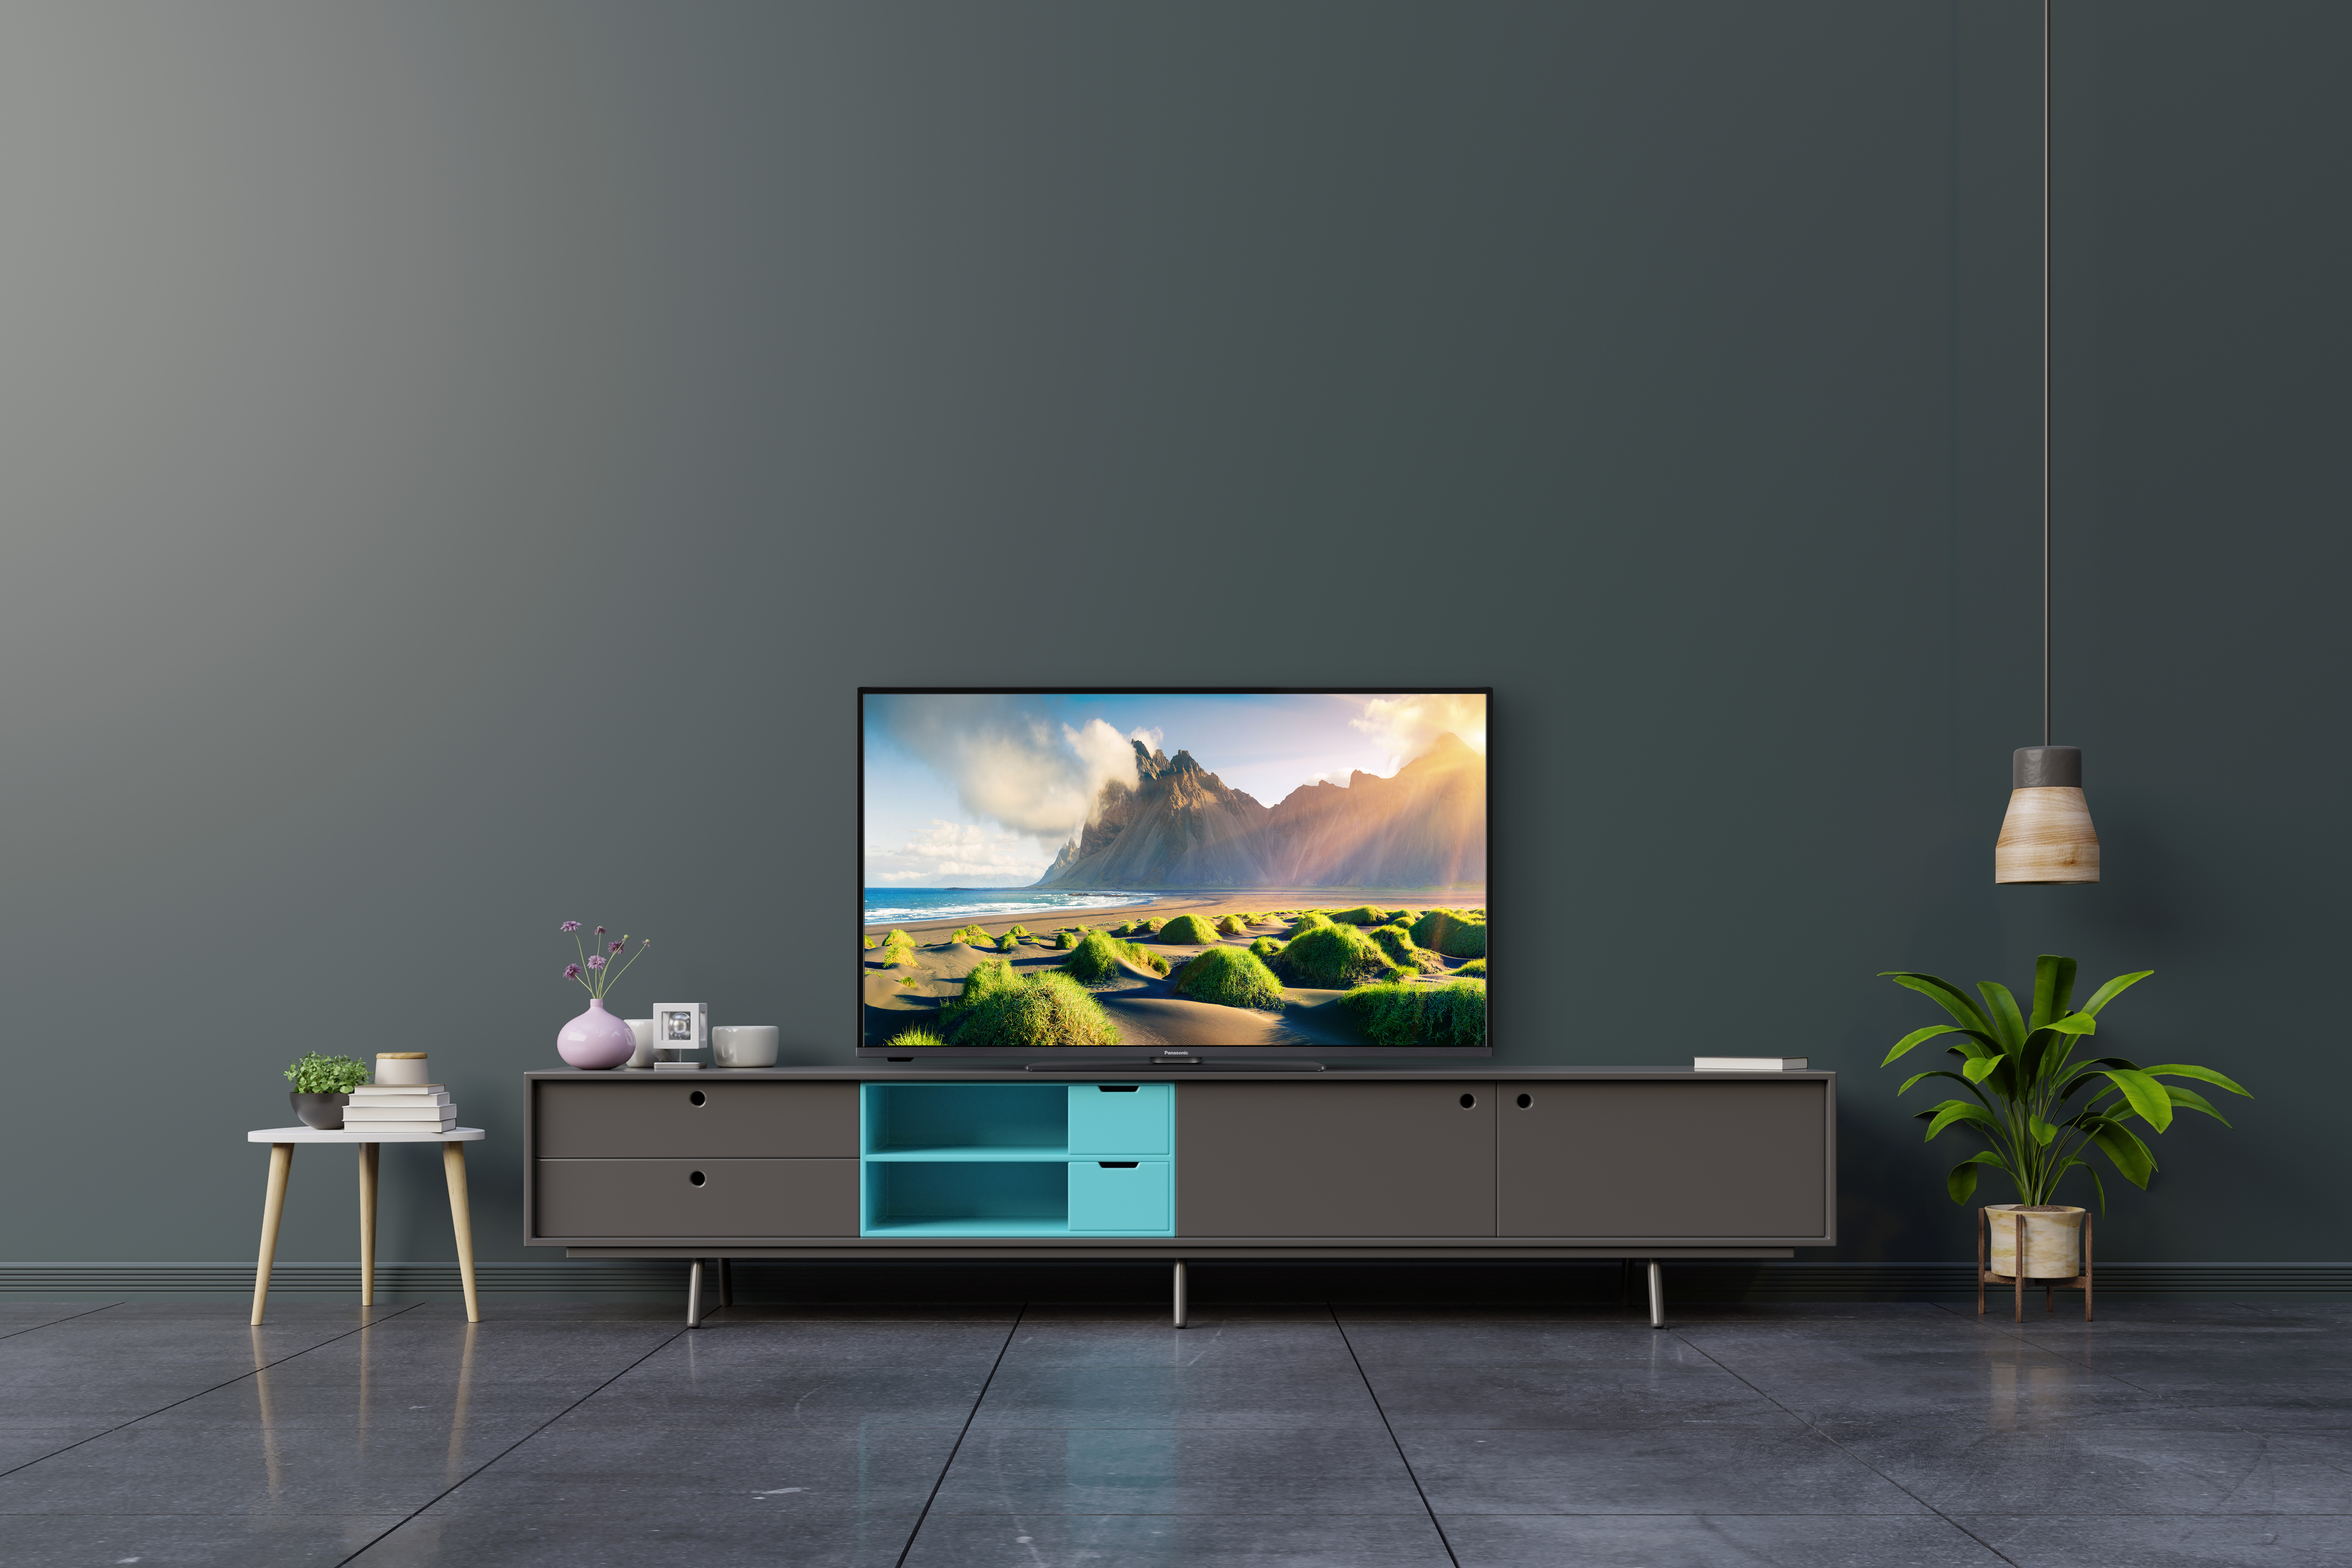 Panasonic presenta su nueva gama de televisores OLED y LED